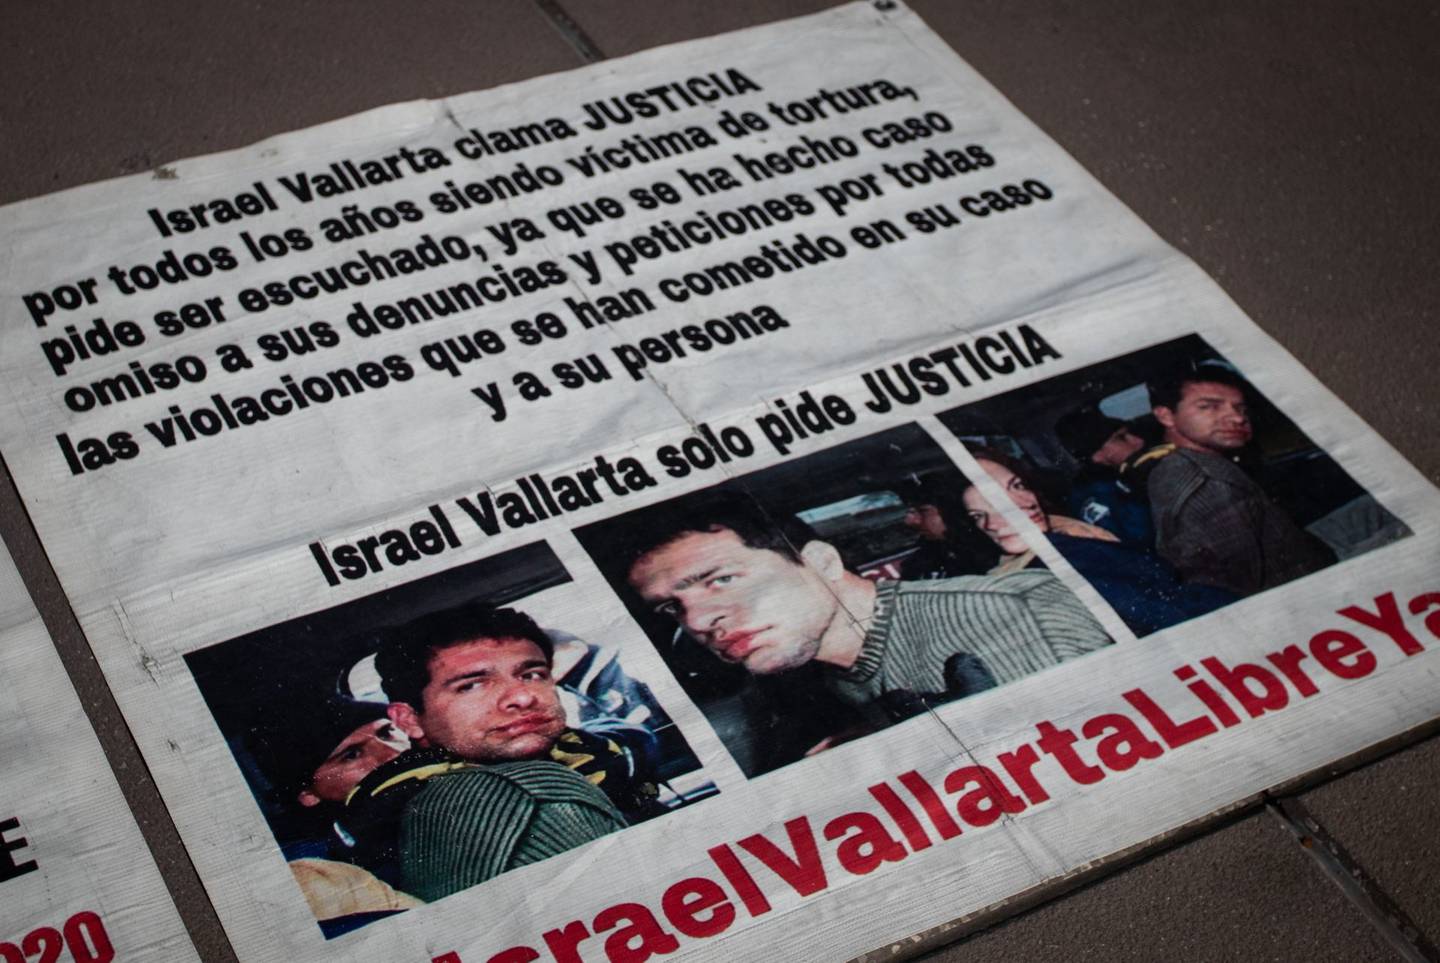 Israel Vallarta continuará en la cárcel, cumple 17 años de encierro